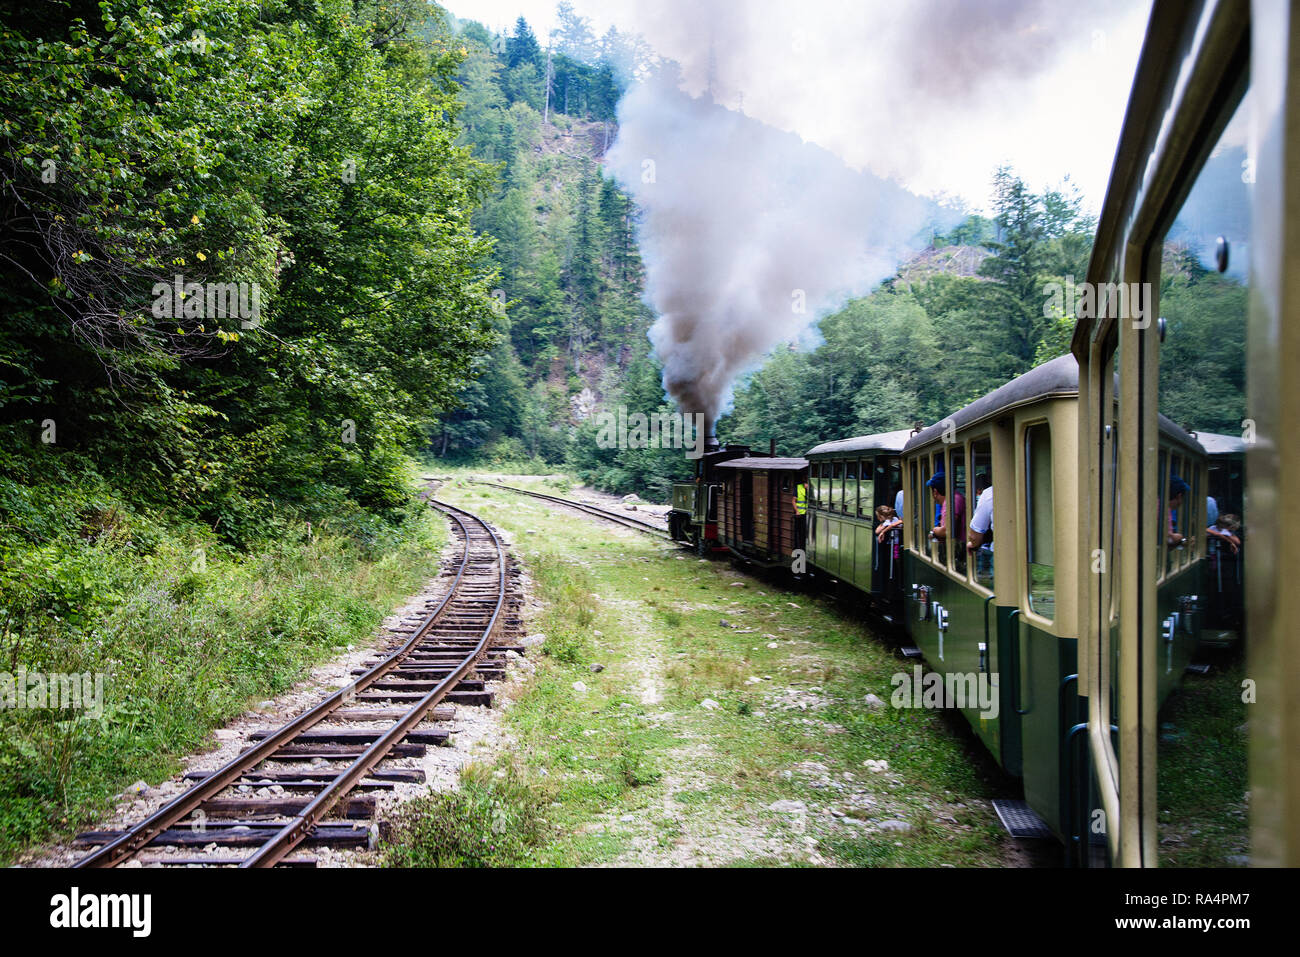 Viseu de Sus, Romania - August 17, 2017: View of the Mocanita Train, a steam train in Maramures County, Romania Stock Photo